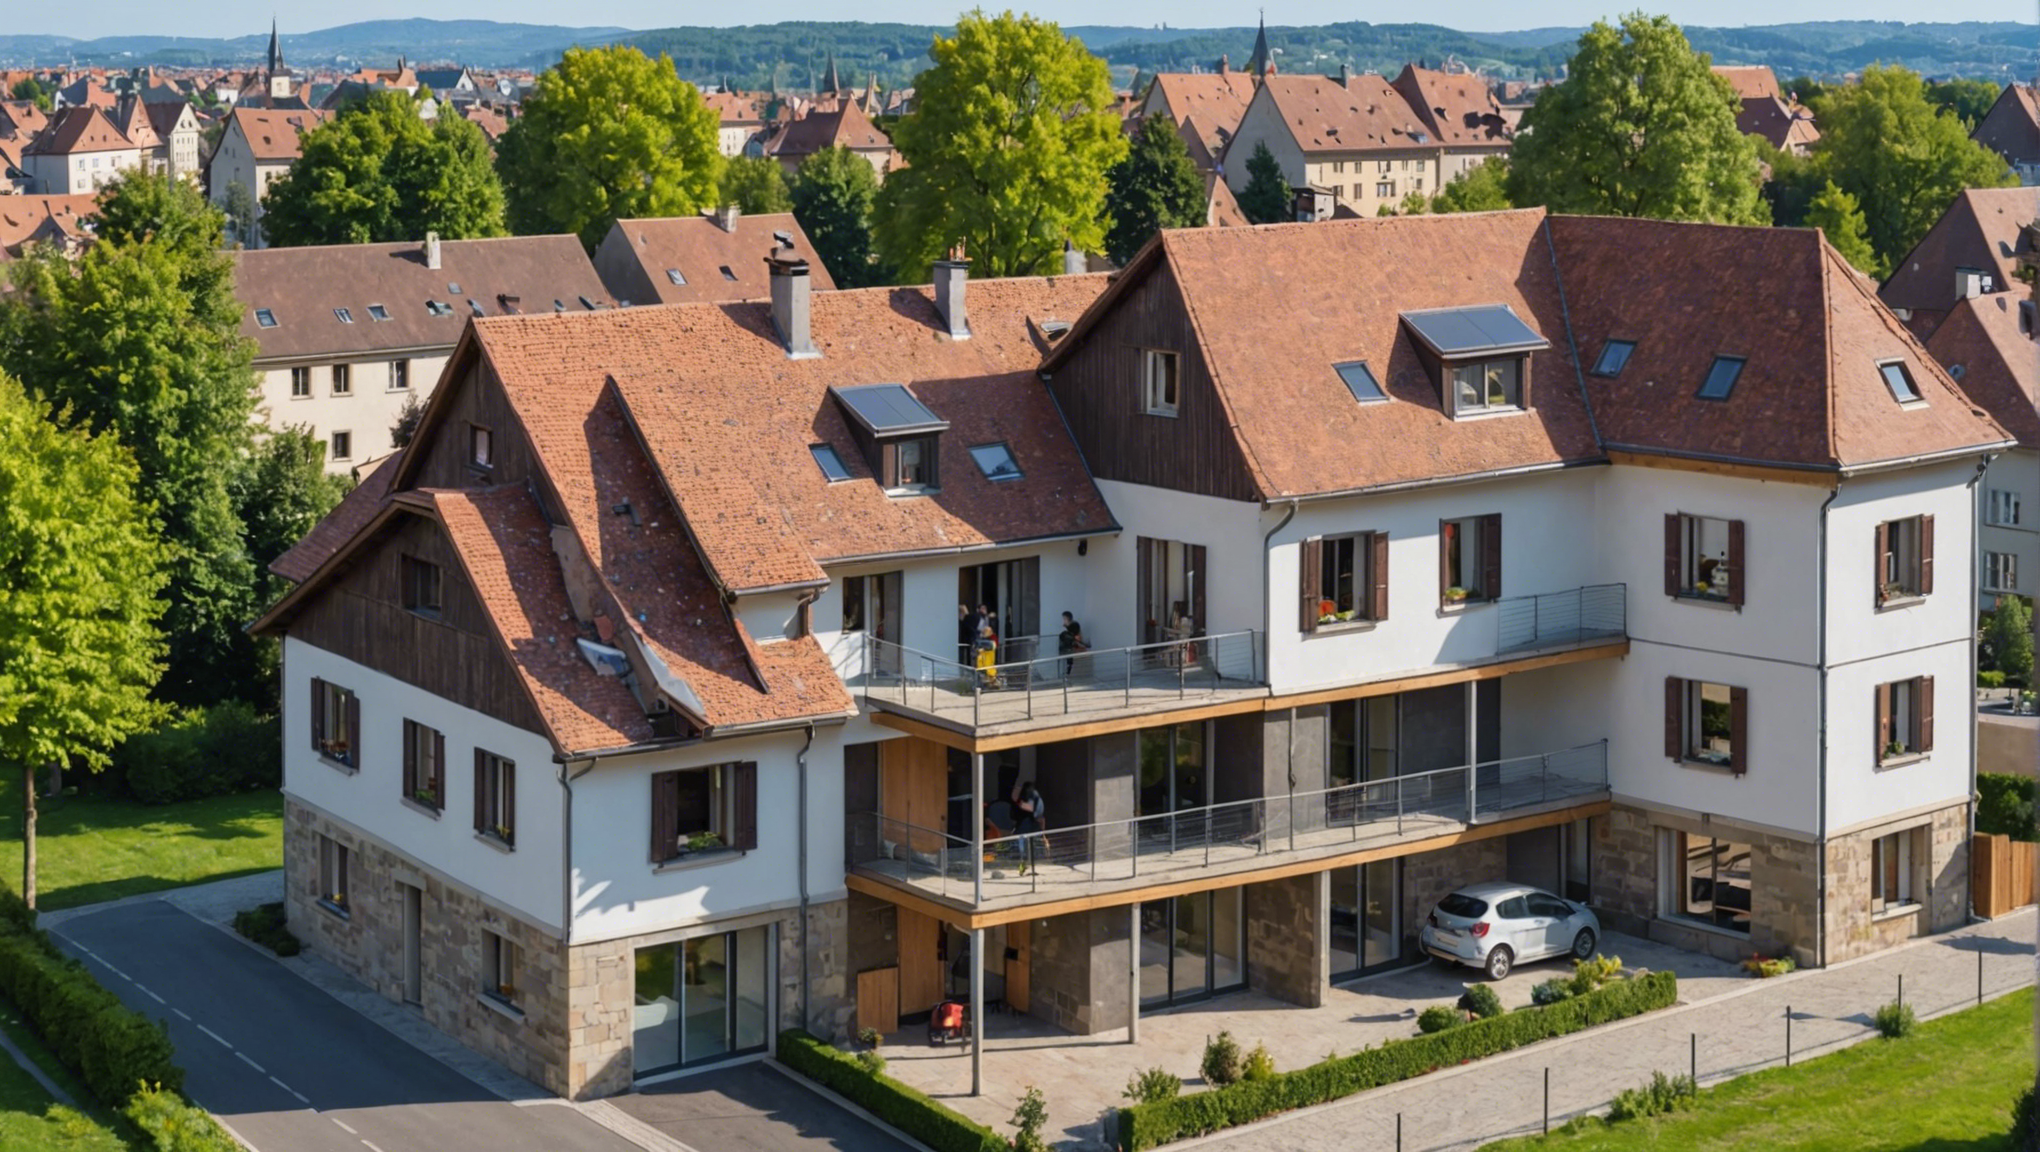 obtenez un devis pour la construction de votre maison à strasbourg en suivant nos conseils et en choisissant les bonnes entreprises du bâtiment pour concrétiser votre projet immobilier.